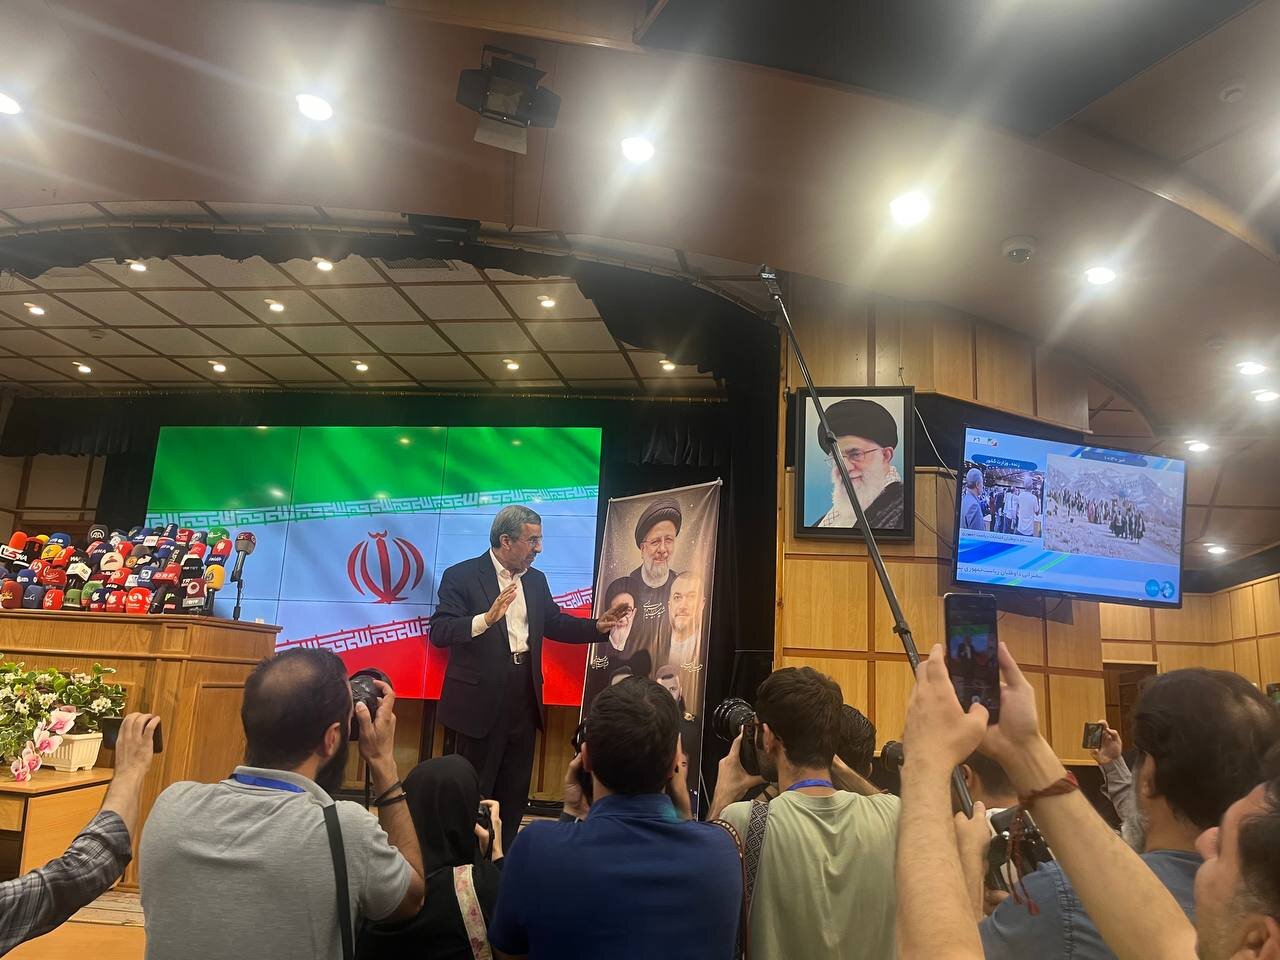 واکنش محمود احمدی نژاد به قطع شدن صدای میکروفون در هنگام سخنرانی